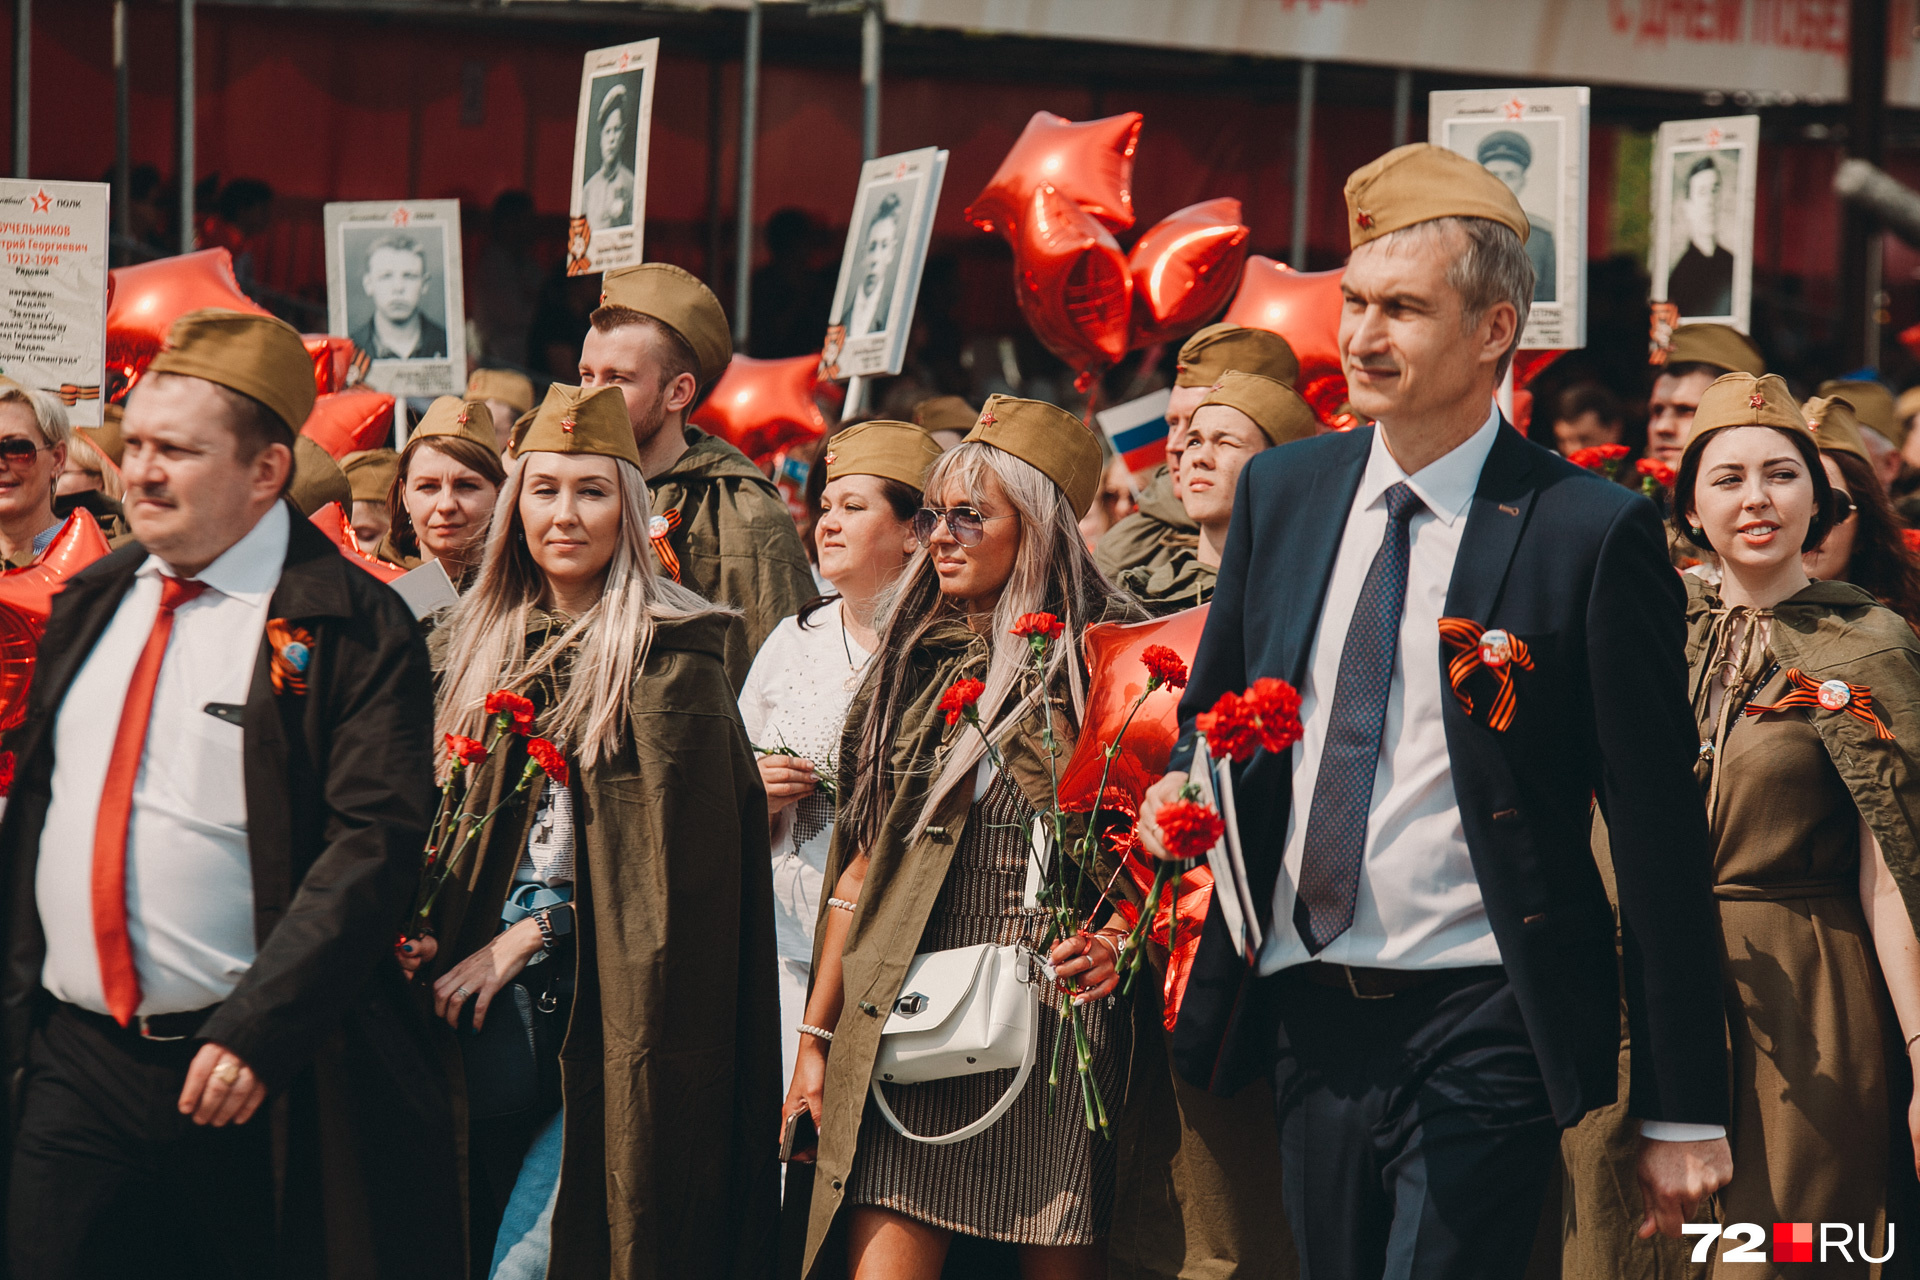 Современных белокурых принцесс заметила наша Ирина Шарова среди участников парада. В форме военных лет, с гвоздиками в руках. С модными сумочками и очками от солнца